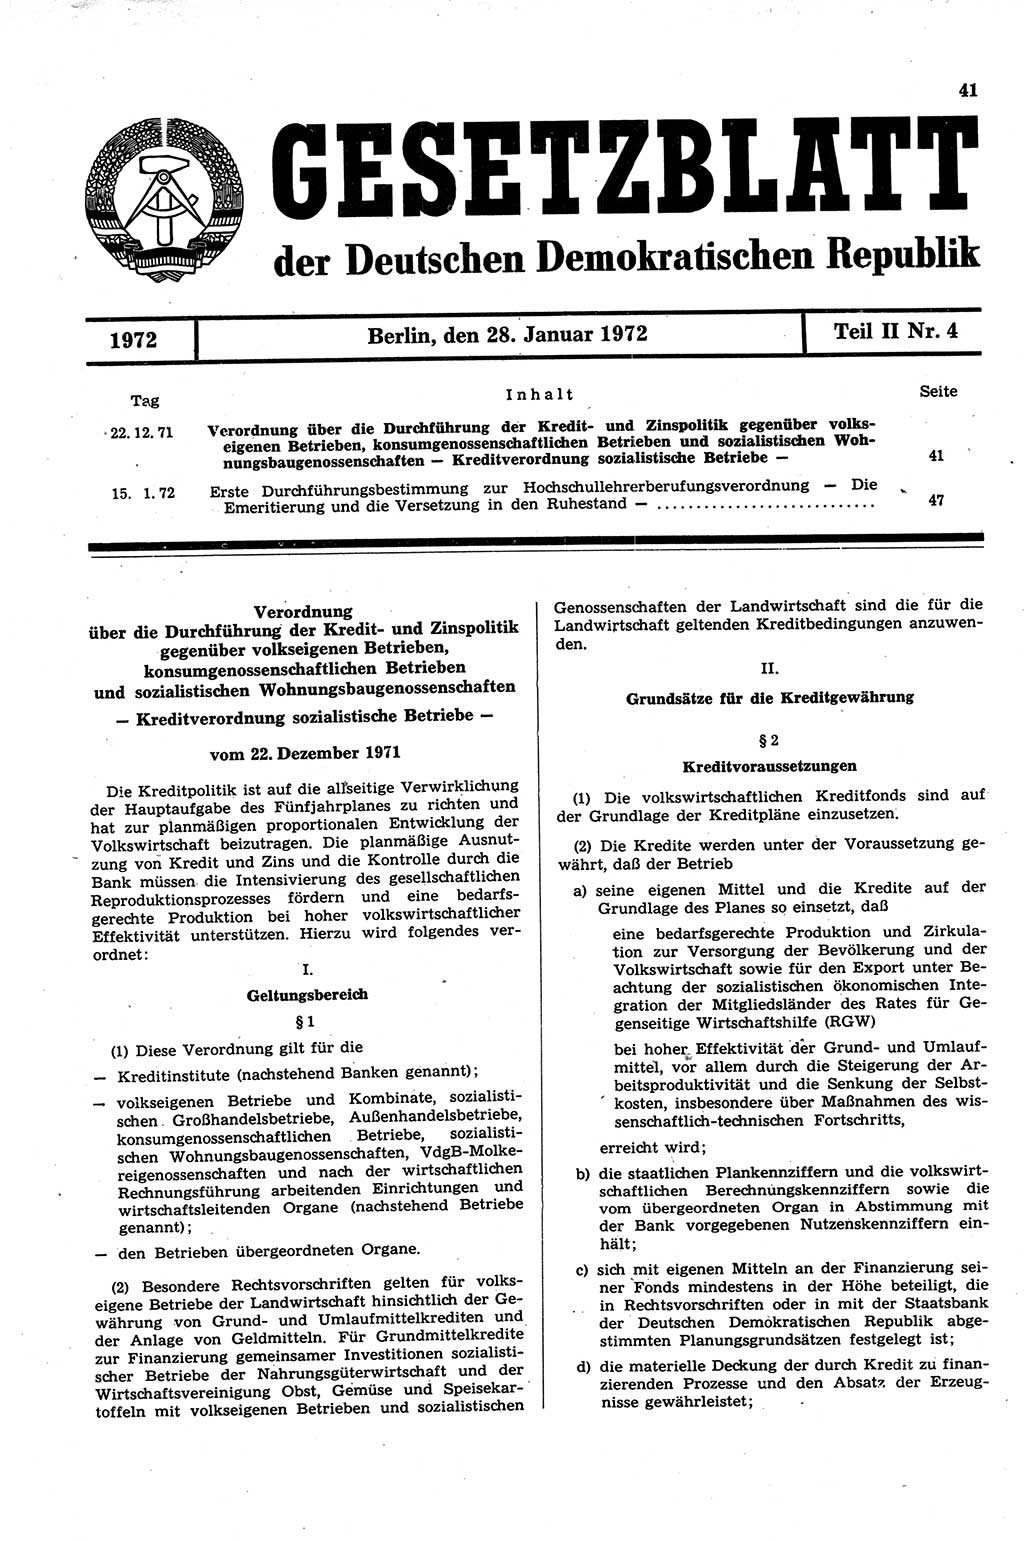 Gesetzblatt (GBl.) der Deutschen Demokratischen Republik (DDR) Teil ⅠⅠ 1972, Seite 41 (GBl. DDR ⅠⅠ 1972, S. 41)